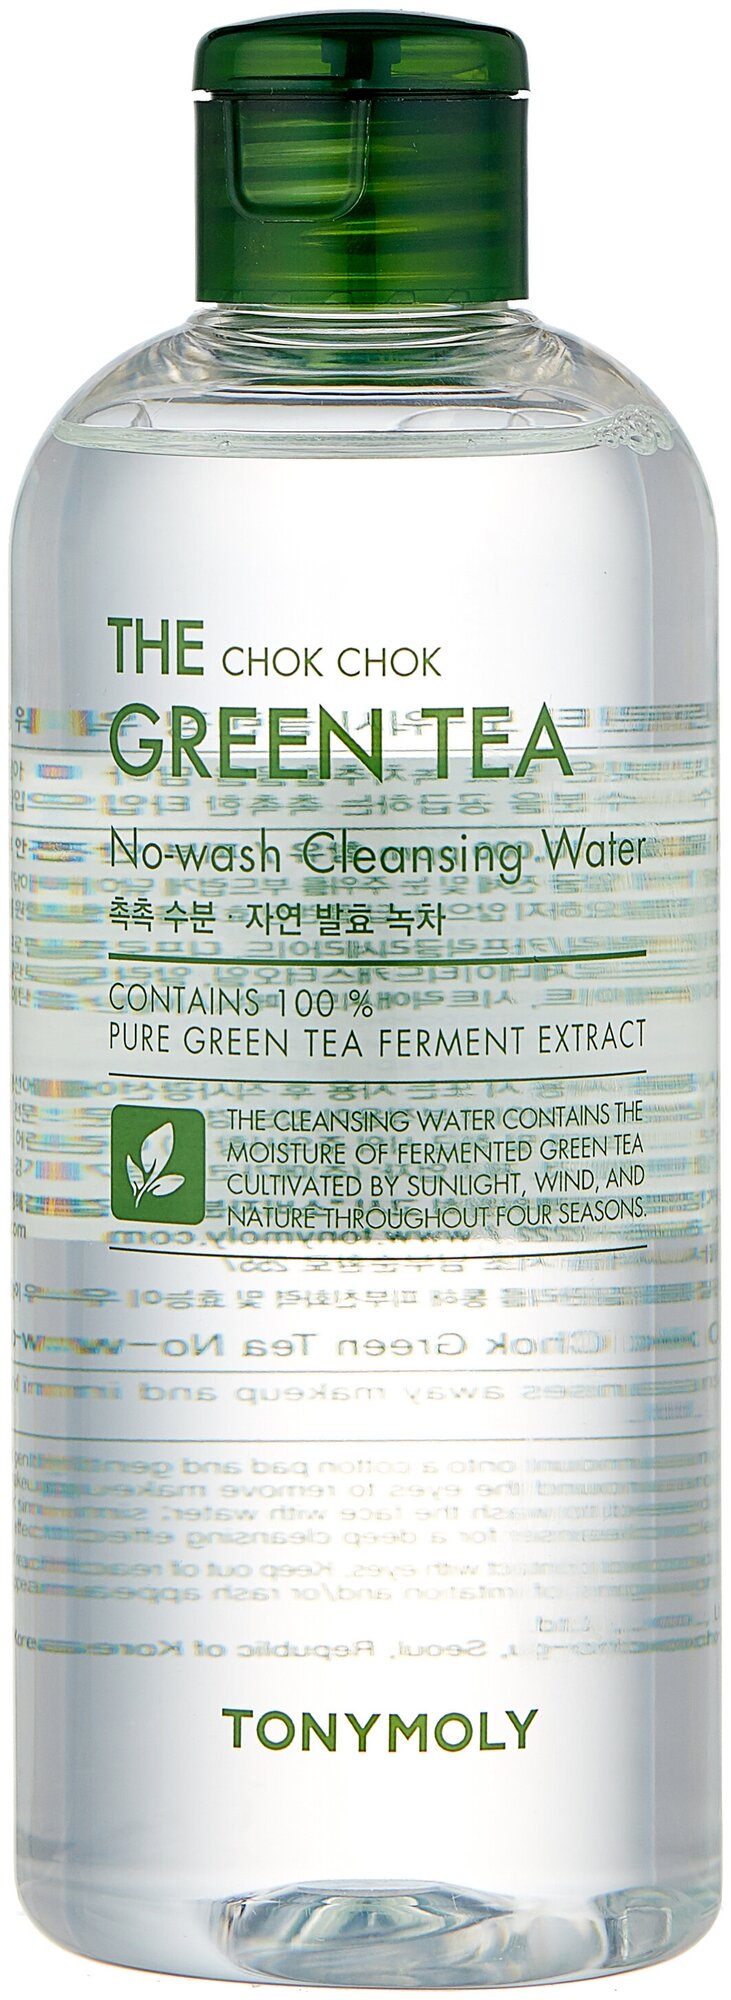 Tony Moly Мицеллярная вода для снятия макияжа с экстрактом зеленого чая The Chok Chok Green Tea No-Wash Cleansing Water, 300 мл